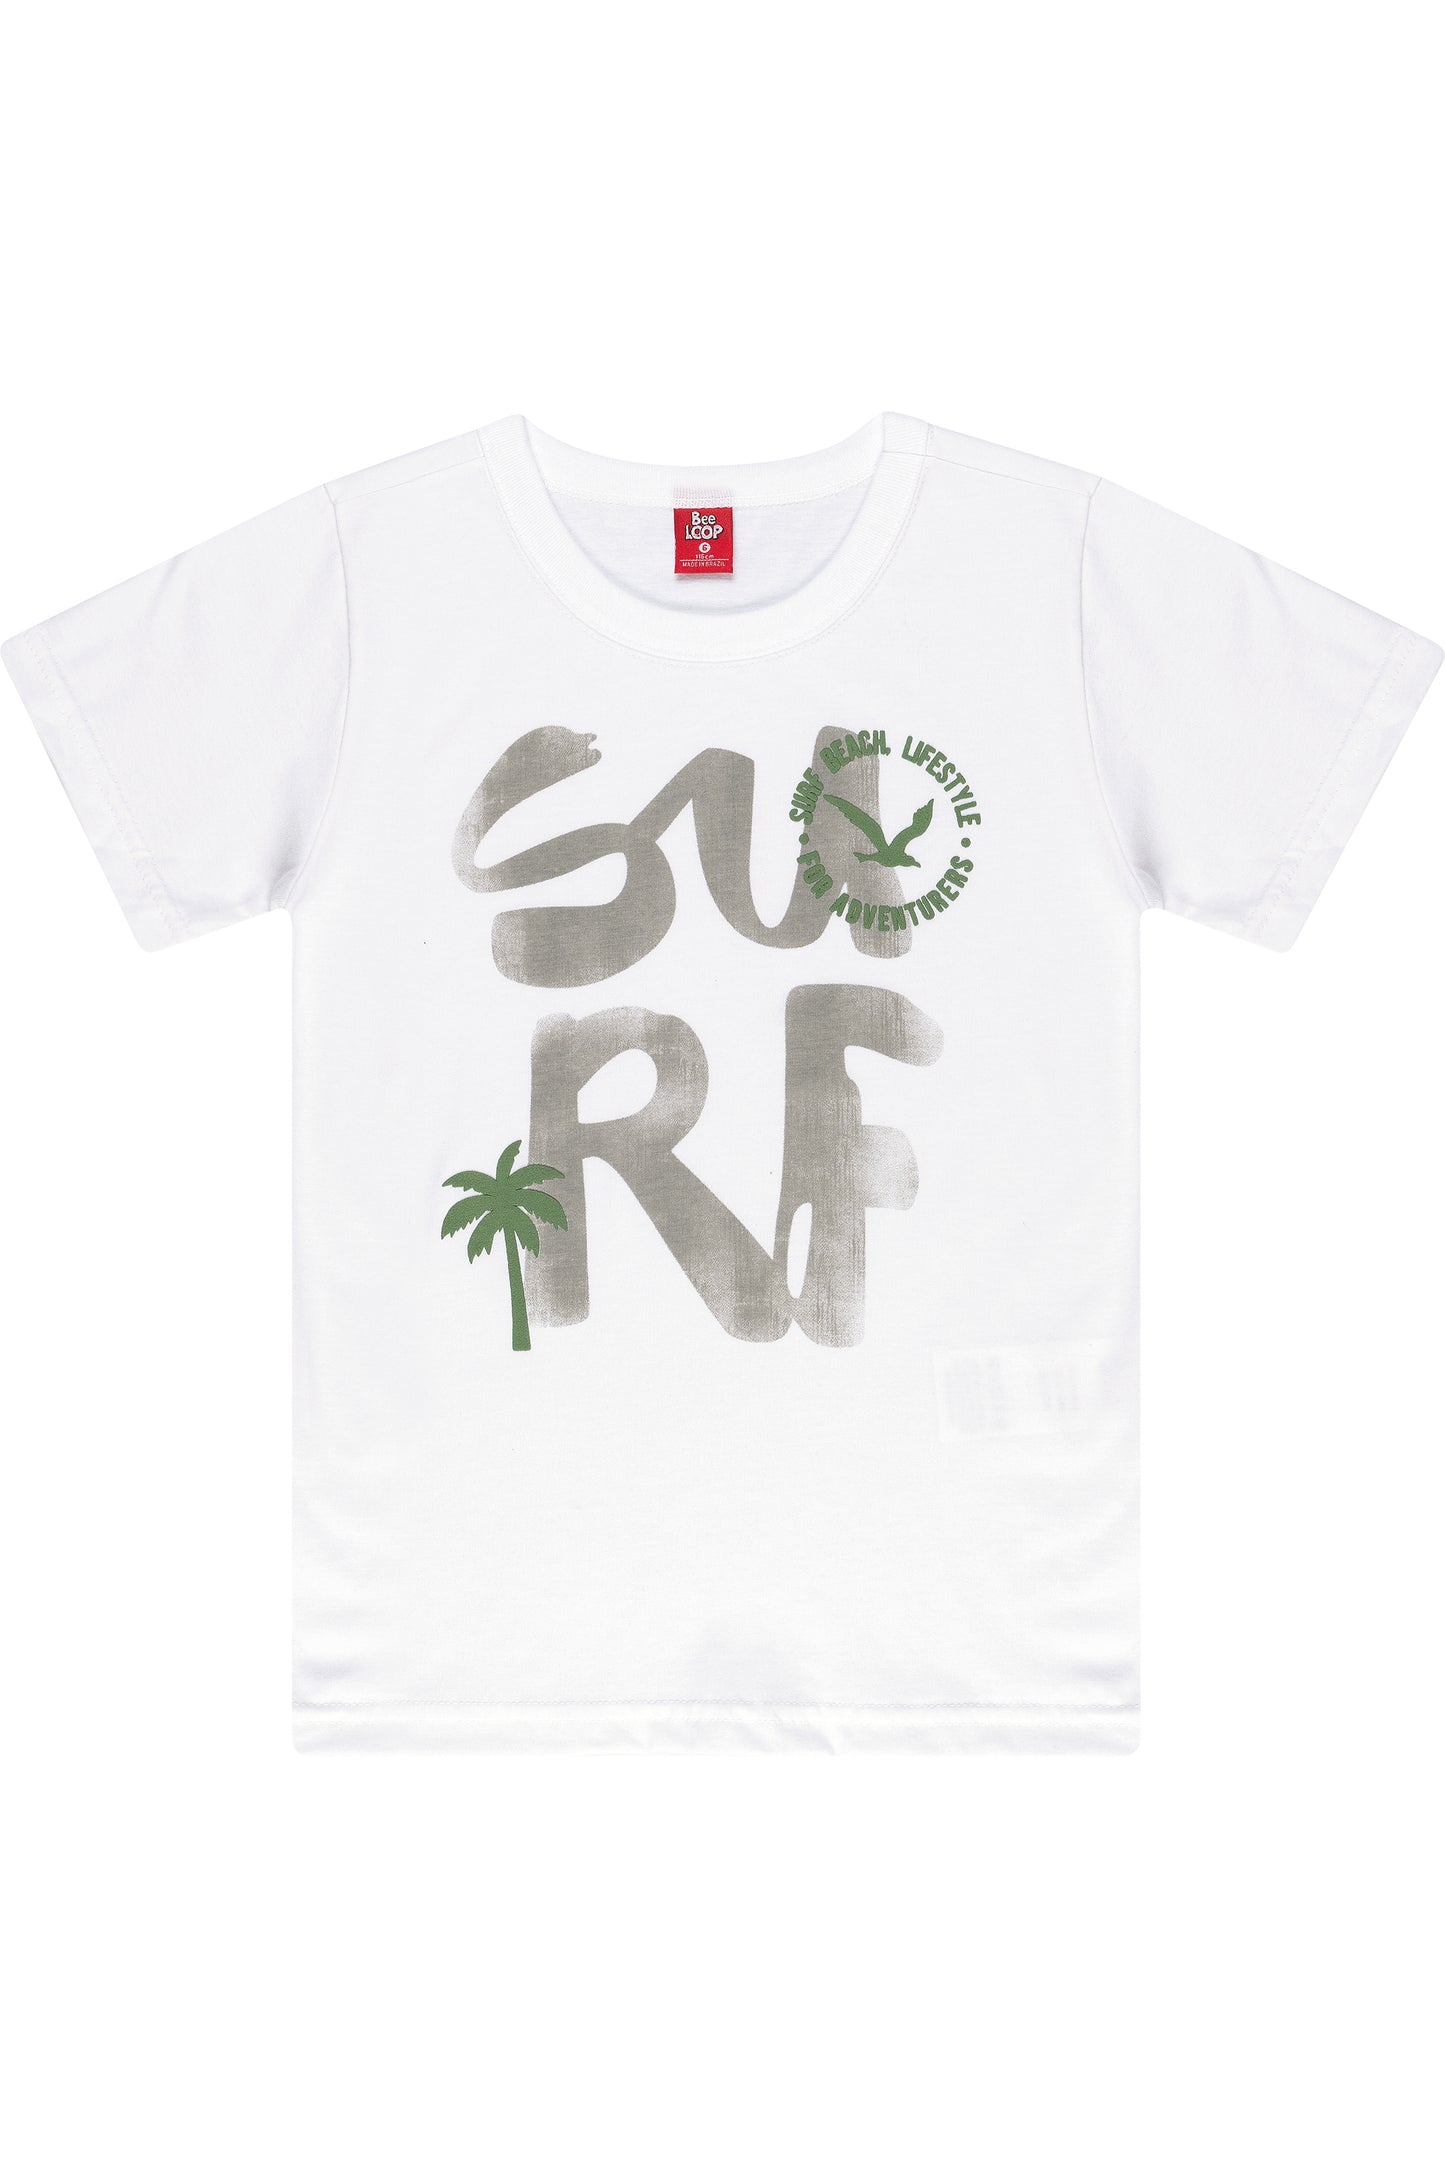 Surf T-Shirt & Palm Tree Shorts